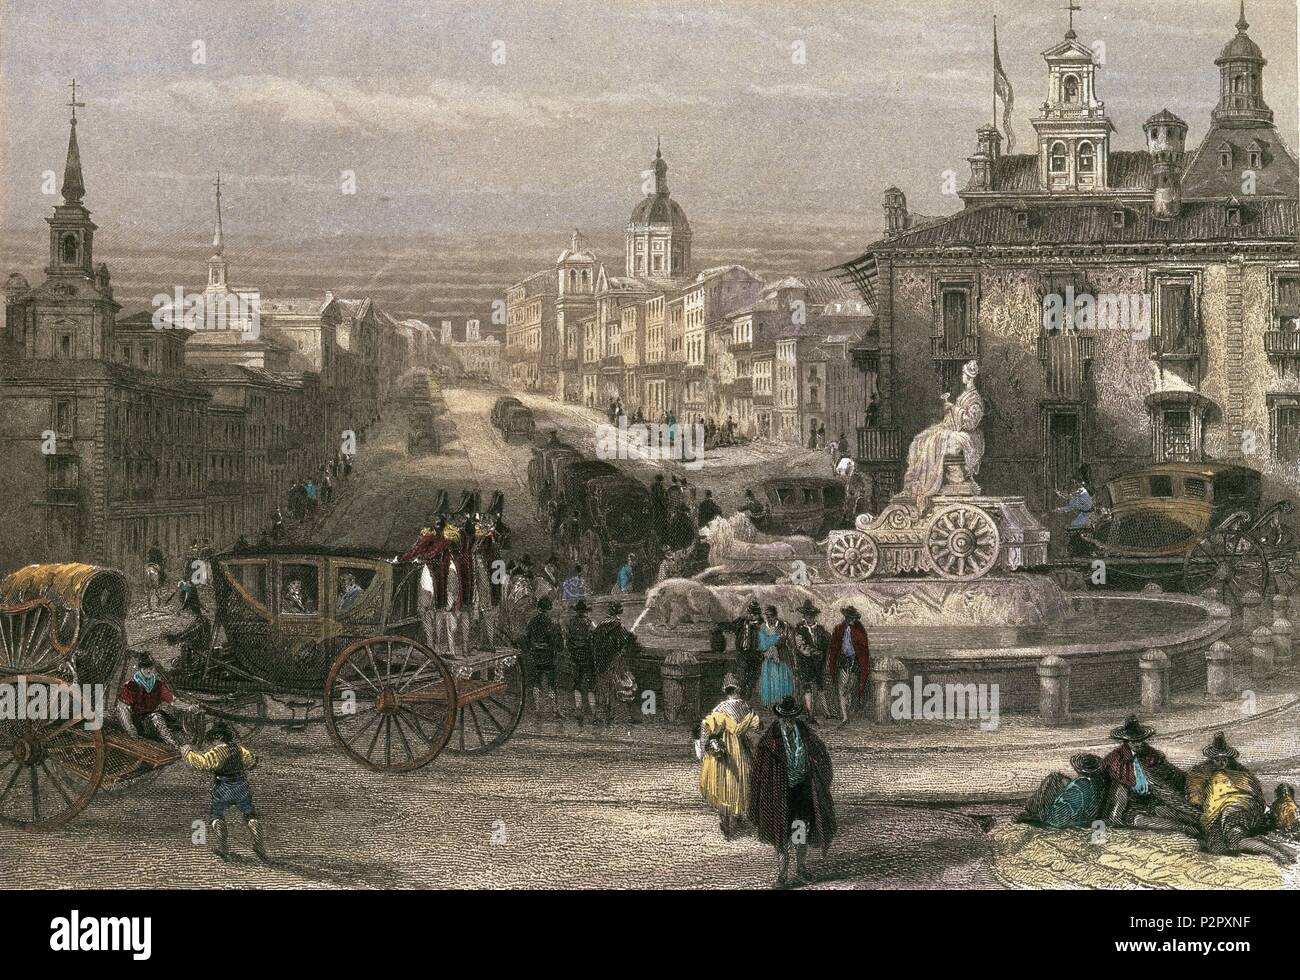 MADRID-LA CIBELES Y CALLE ALCALA-GRABADO S XIX  POR JT WILMORE- ROMANTICISMO. Author: David Roberts (1796-1864). Location: MUSEO DE HISTORIA-GRABADOS COLOREADOS, SPAIN. Stock Photo